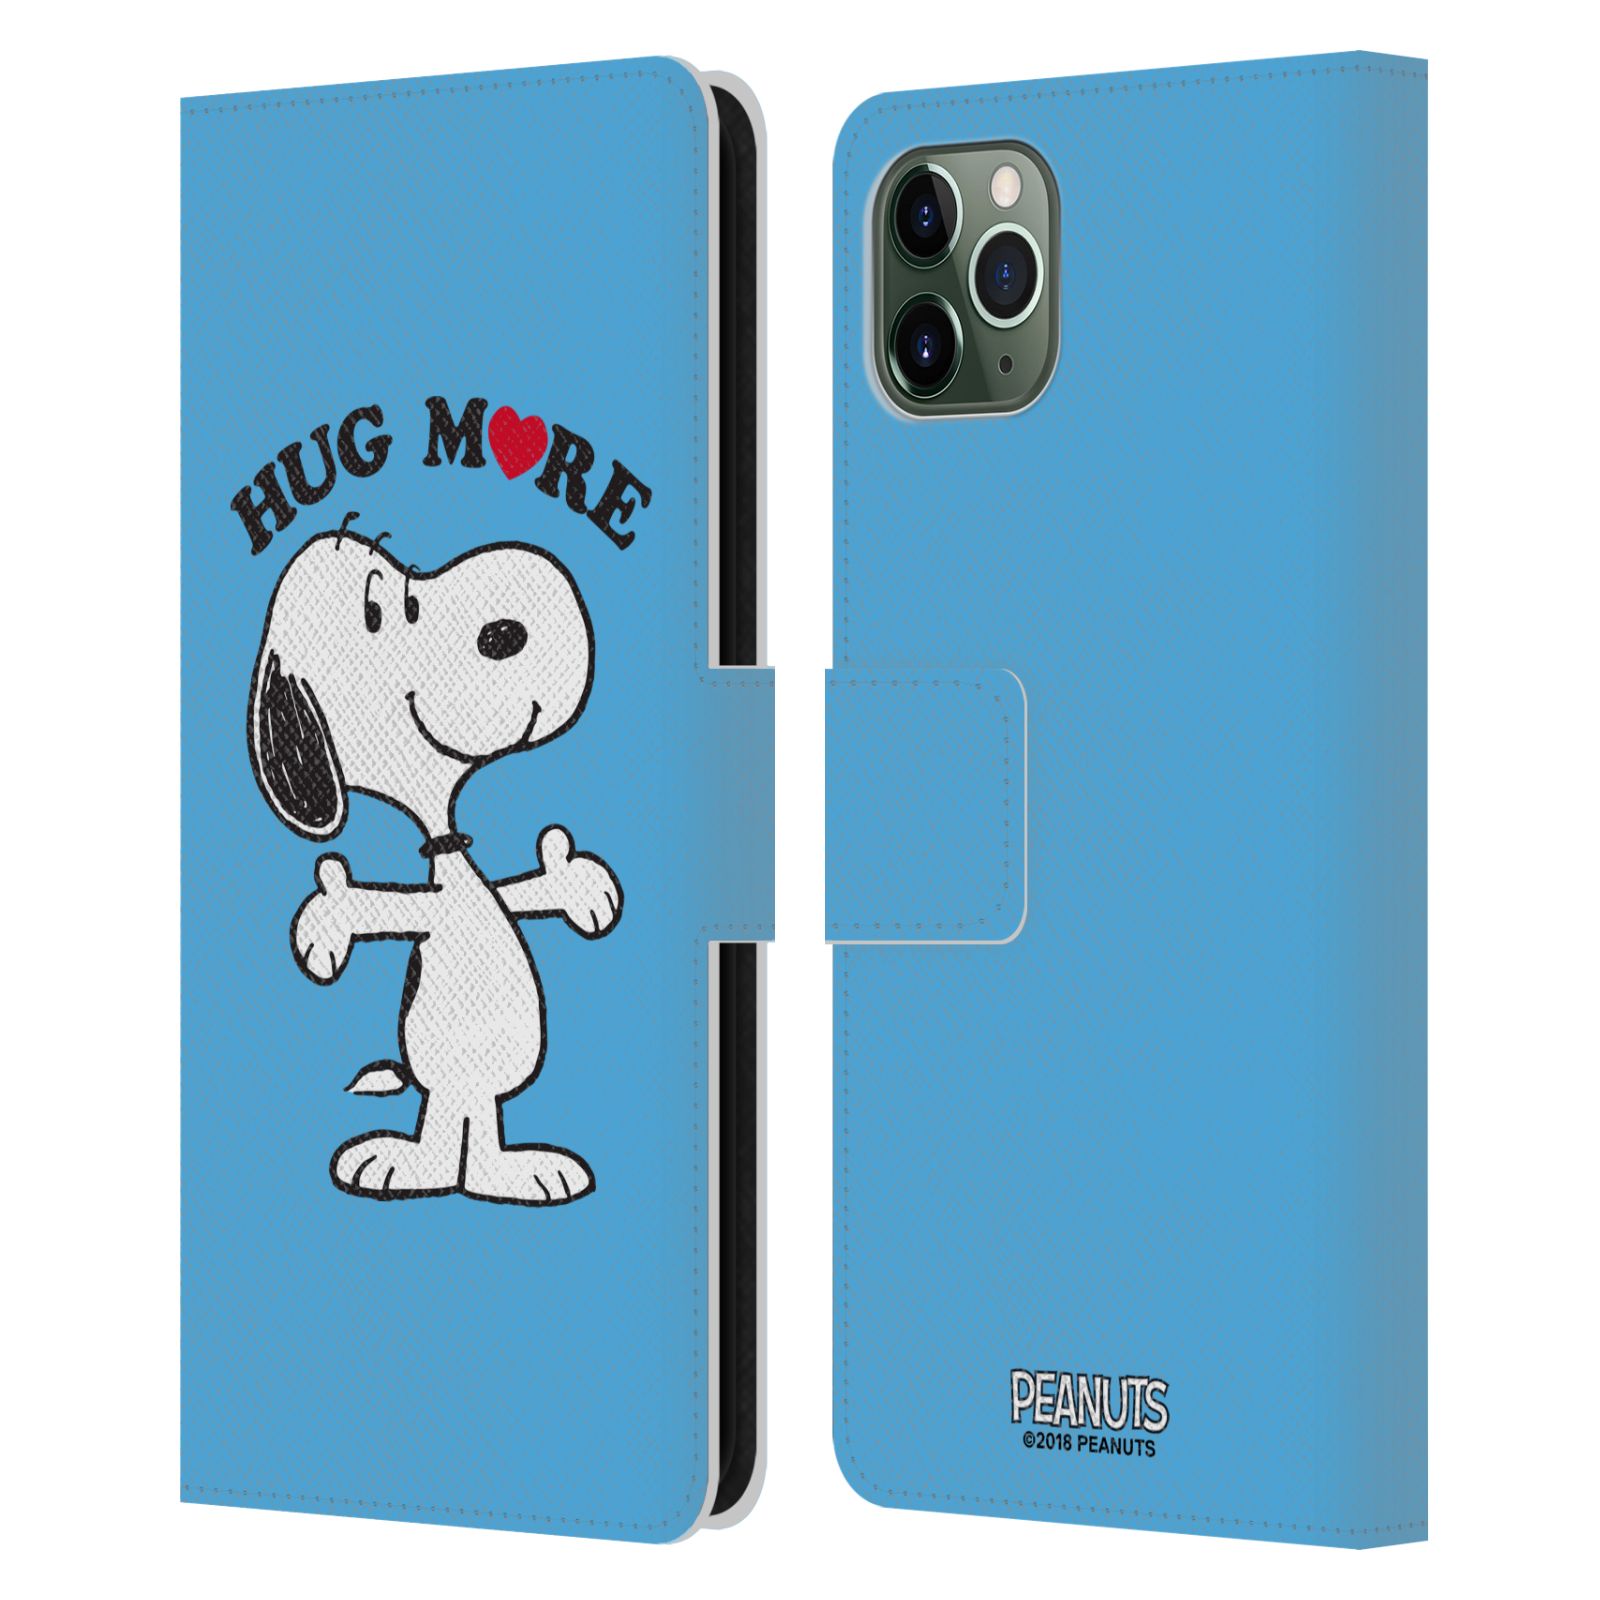 Pouzdro na mobil Apple Iphone 11 PRO MAX - Head Case - Peanuts - pejsek snoopy světle modré objetí